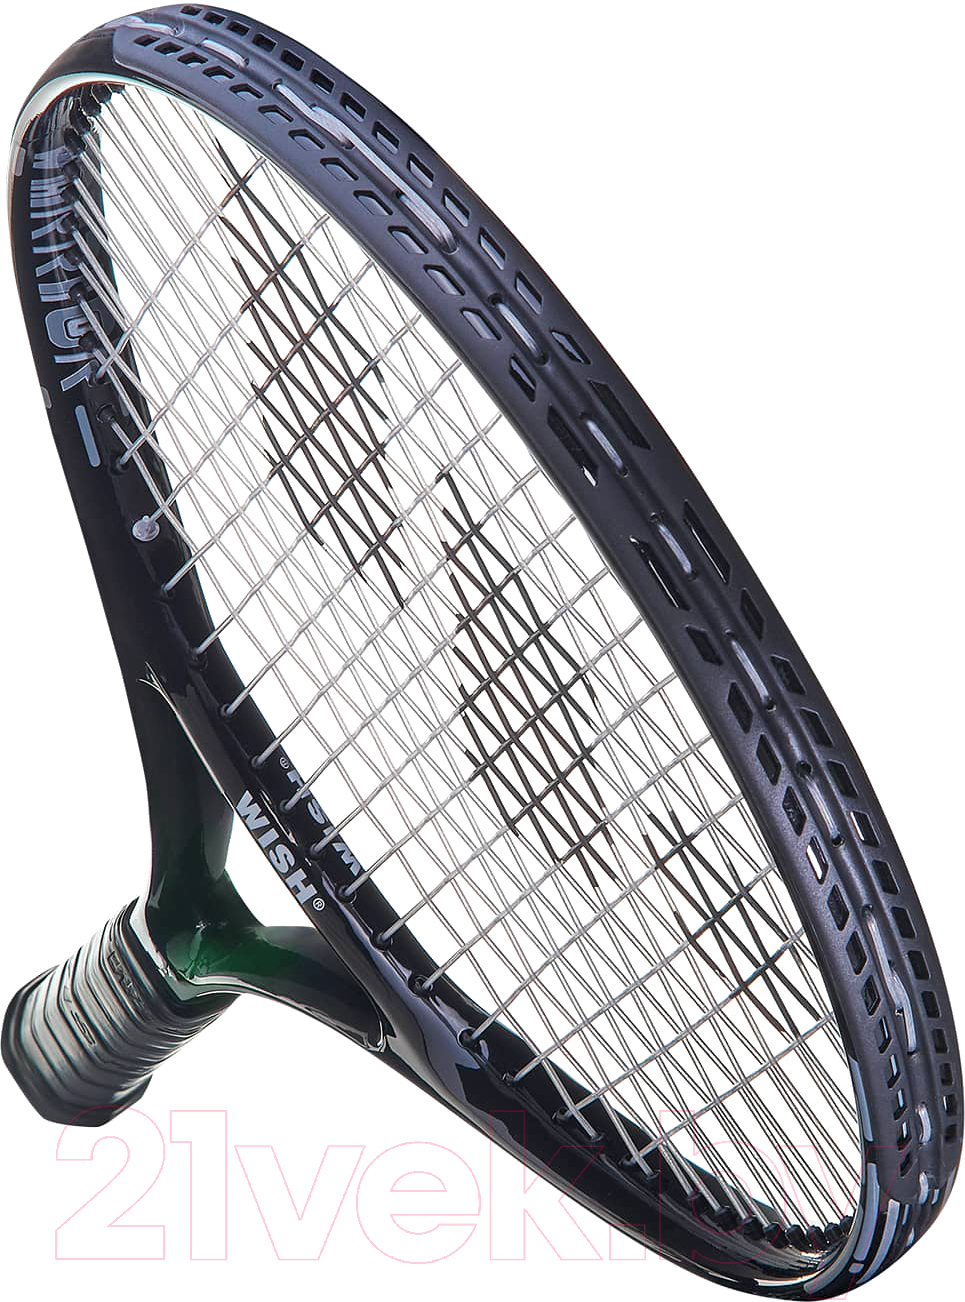 Теннисная ракетка WISH 26 FusionTec 300